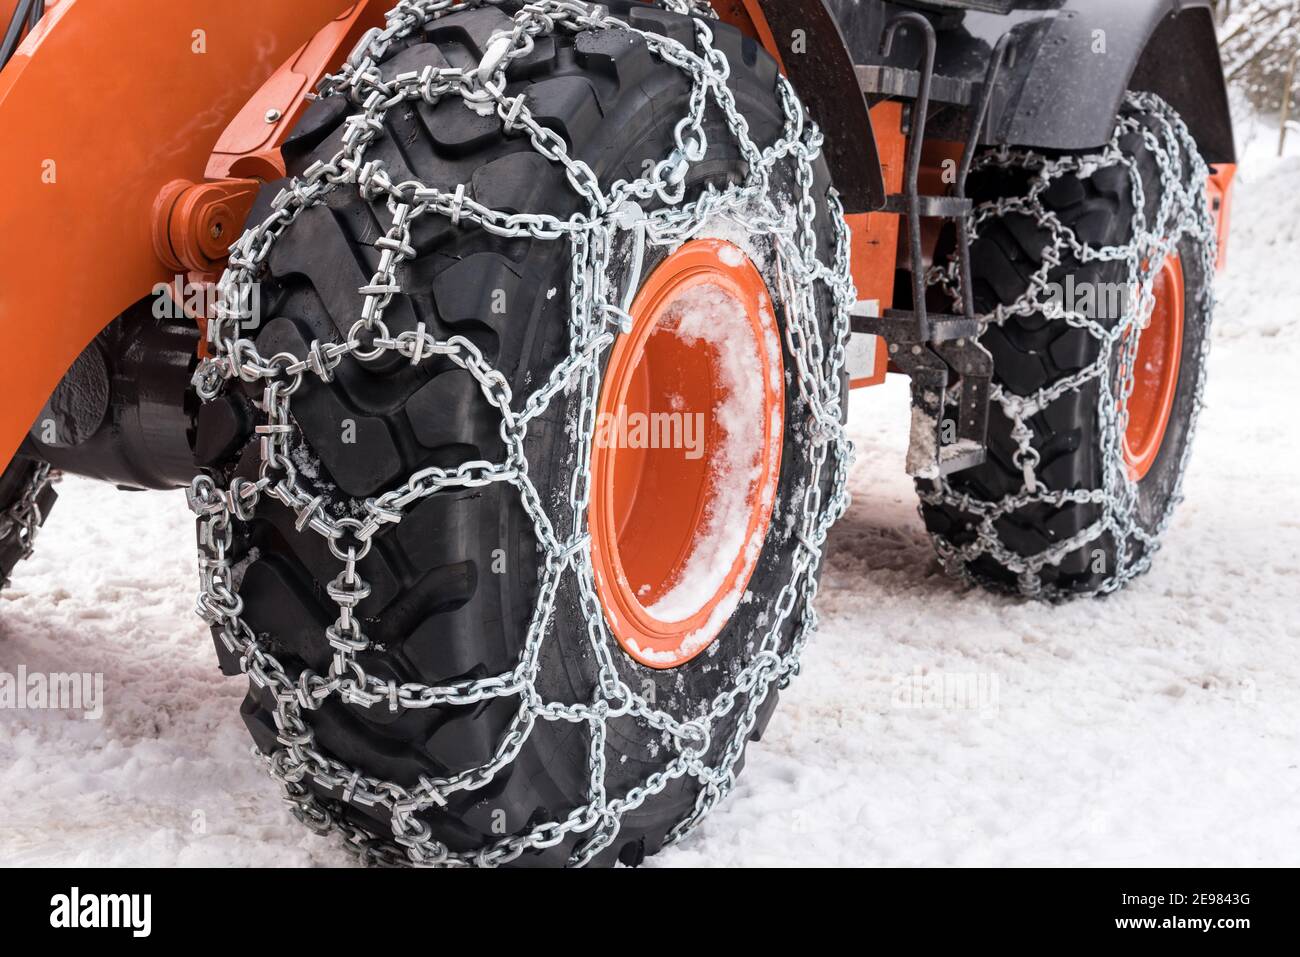 Chaînes à neige métalliques enroulées autour des pneus de roue de la voiture bulldozer garé sur une route enneigée Banque D'Images